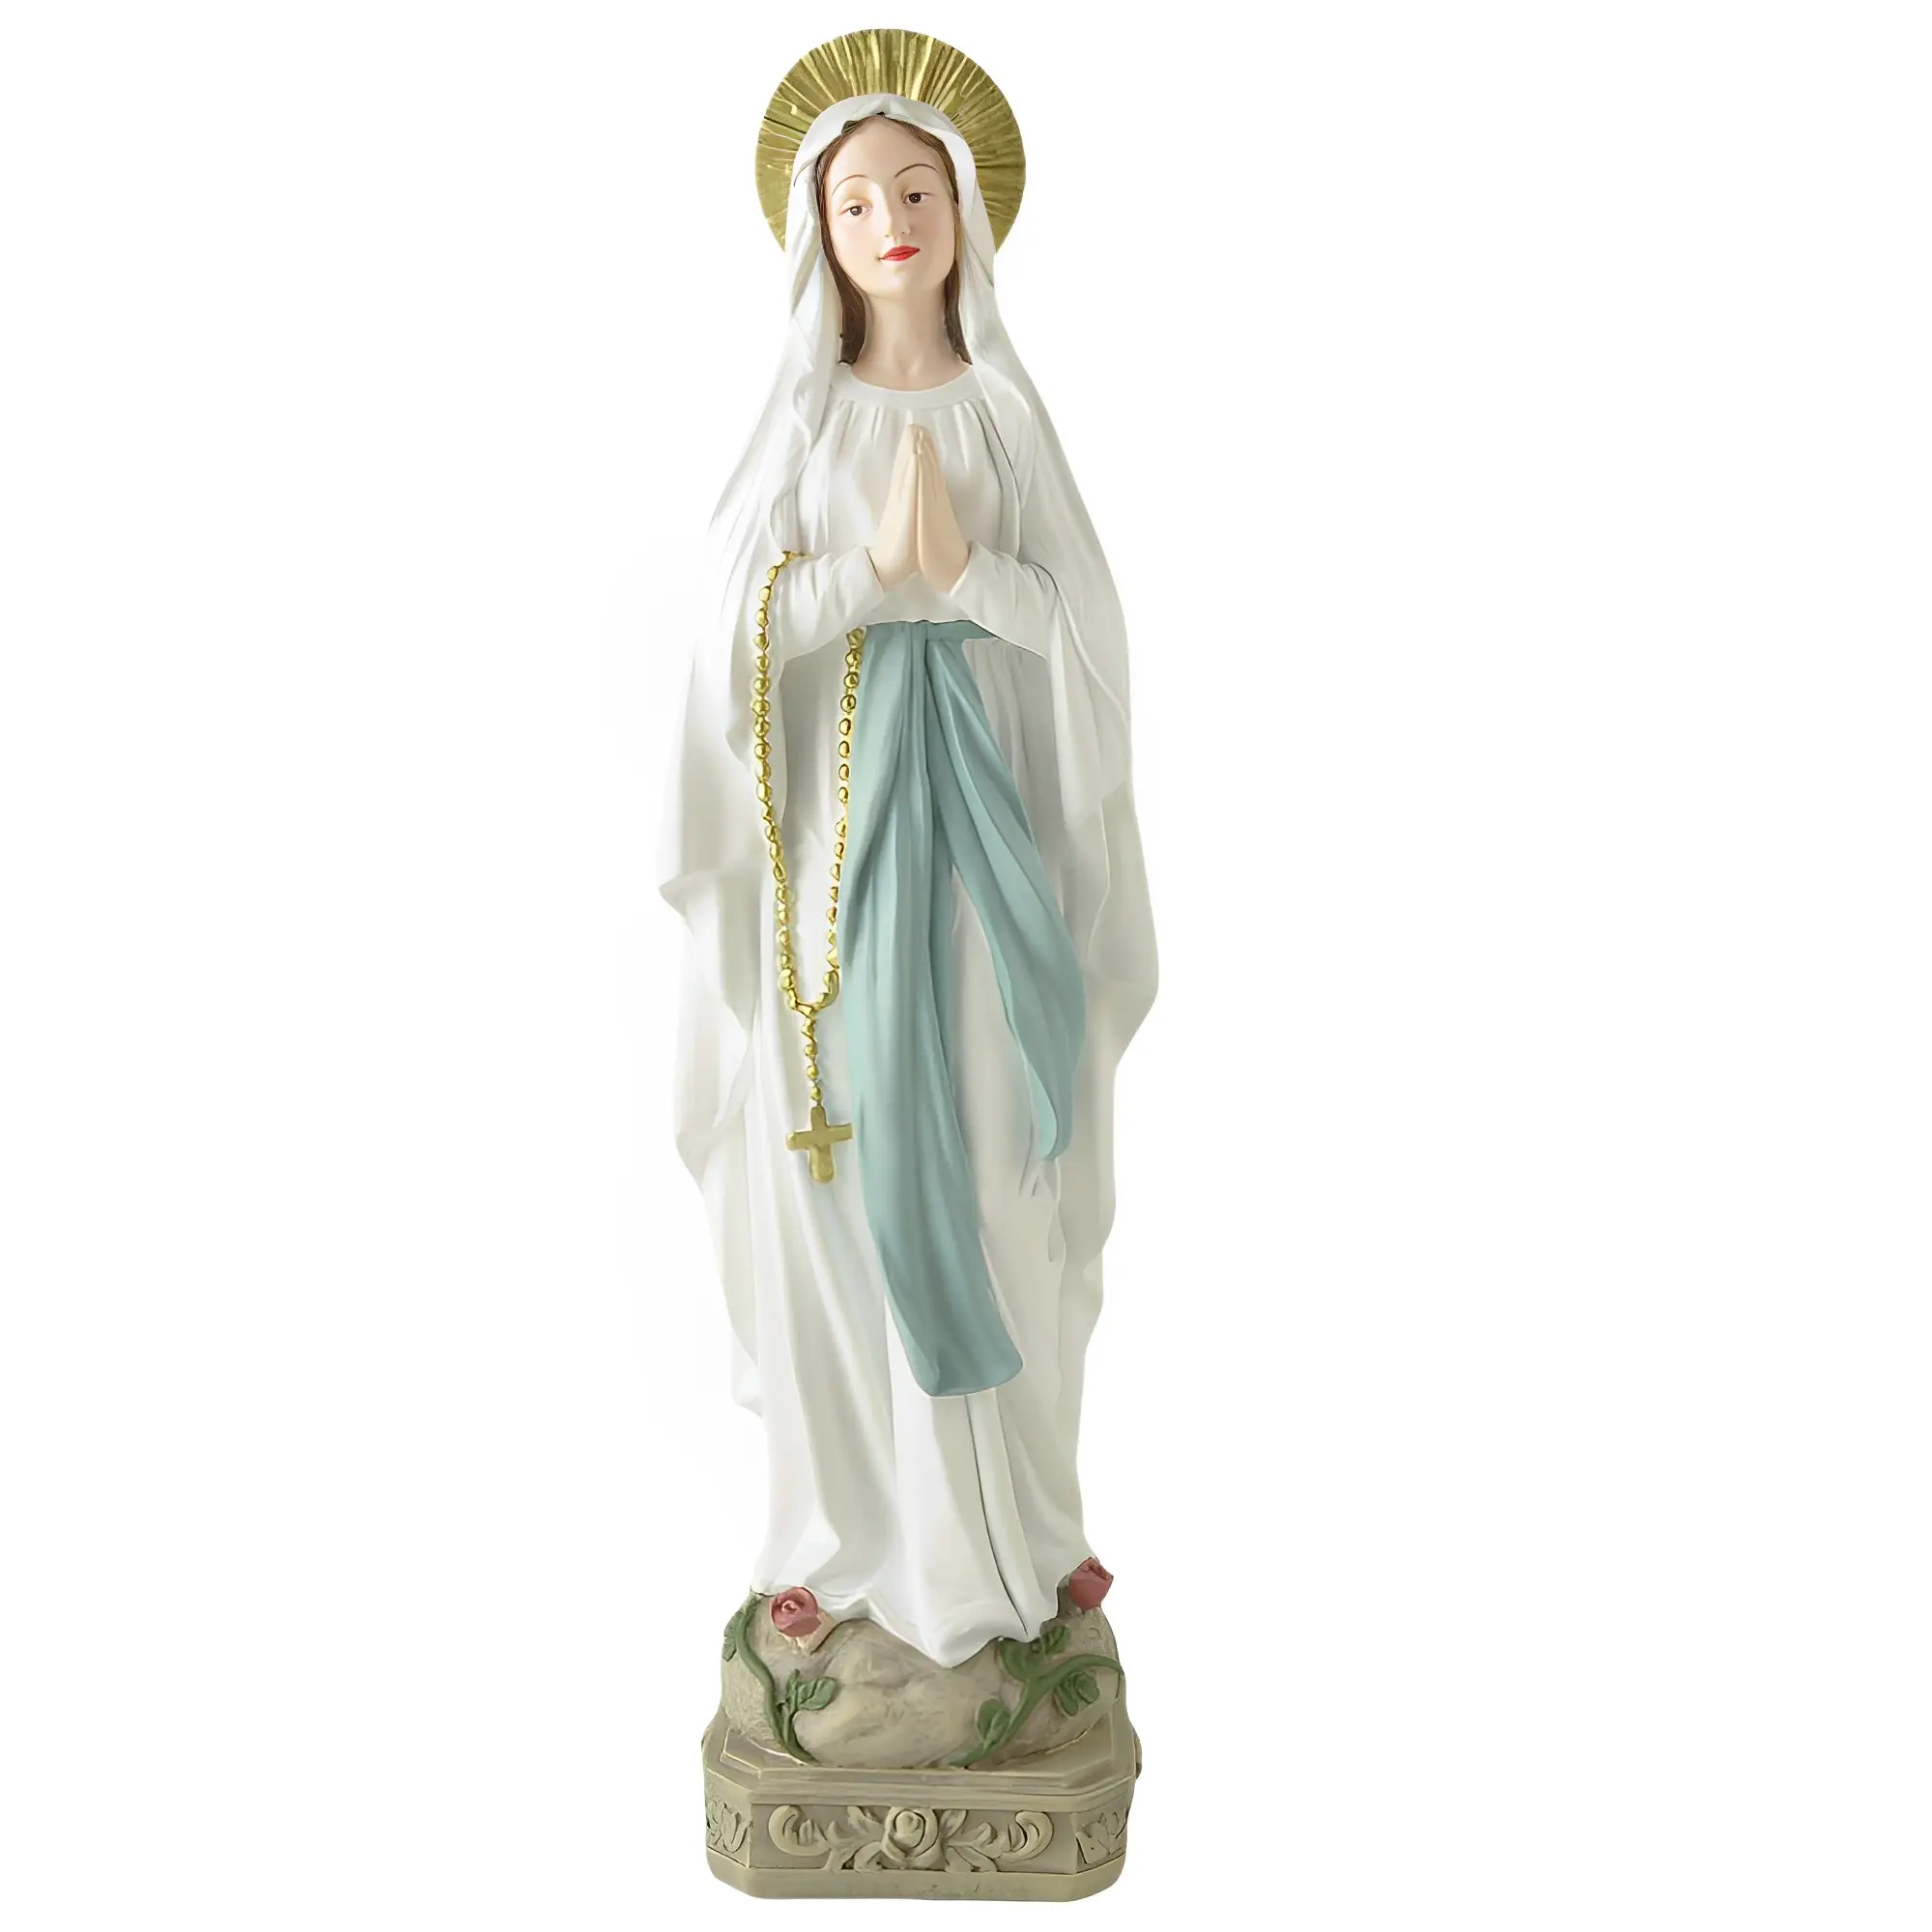 Patung wanita putih Resin tersedia patung wanita Lourdes untuk dekorasi rumah